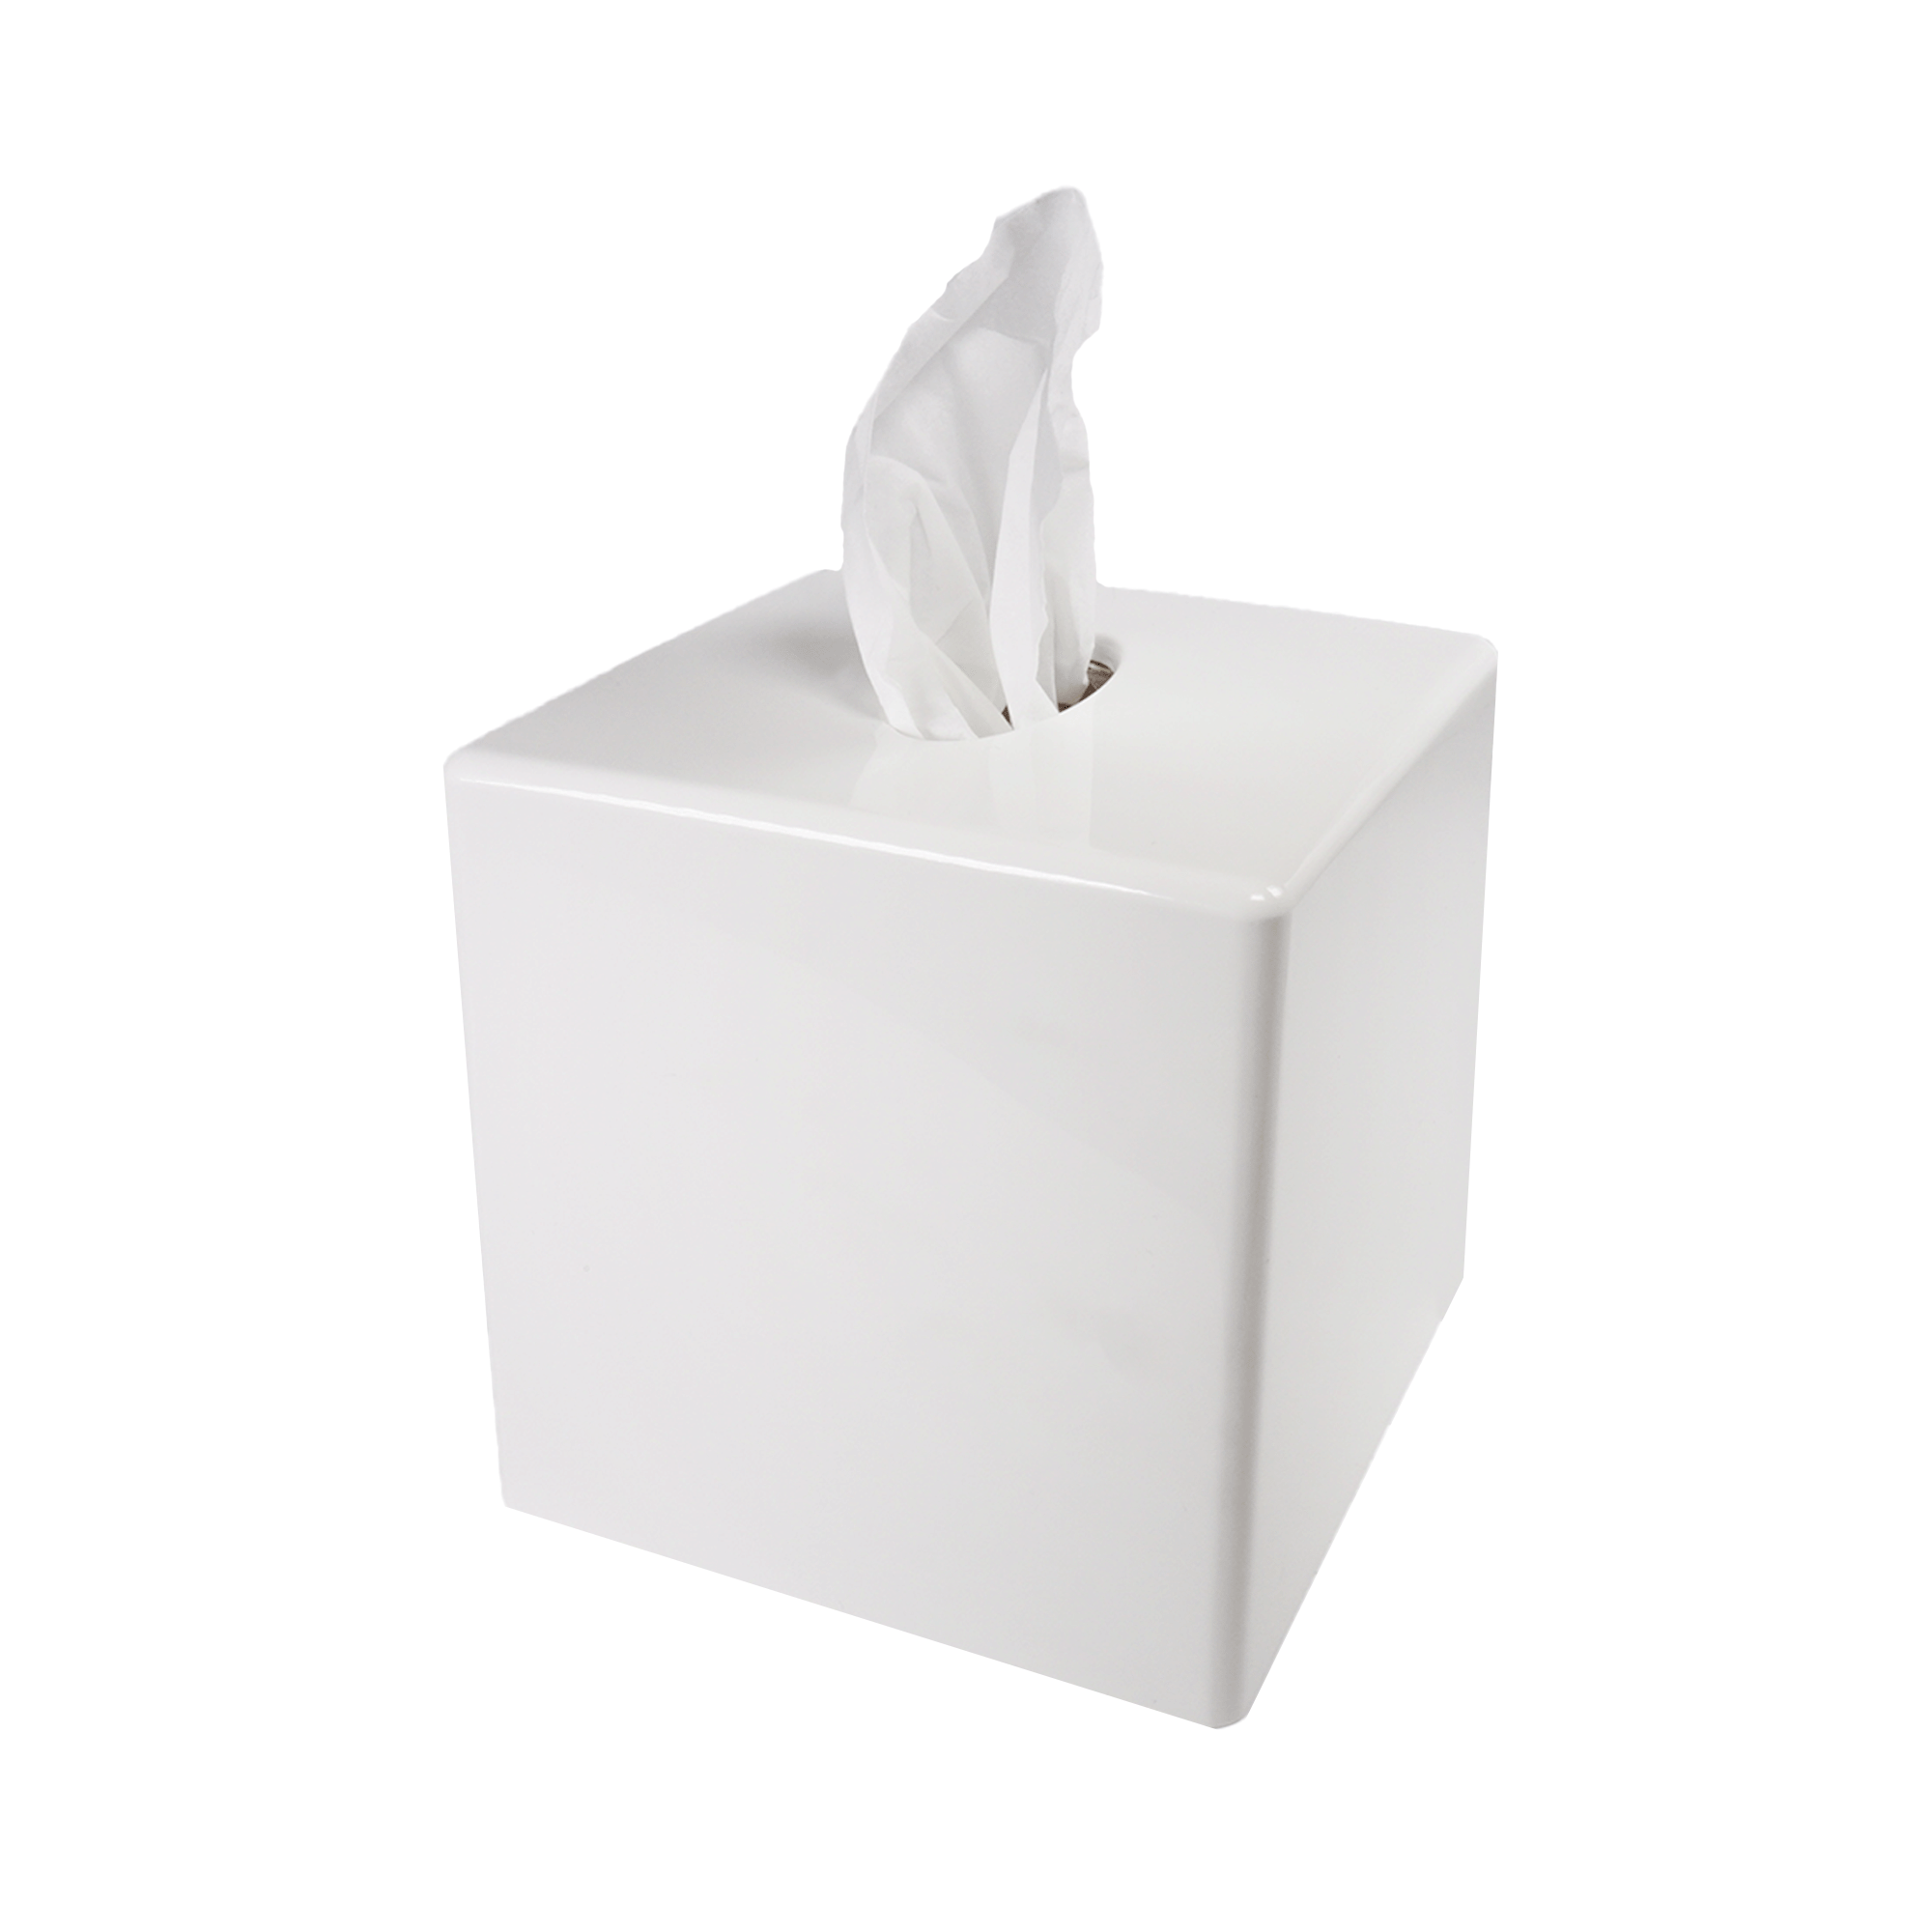 Tissue dispenser cube, White